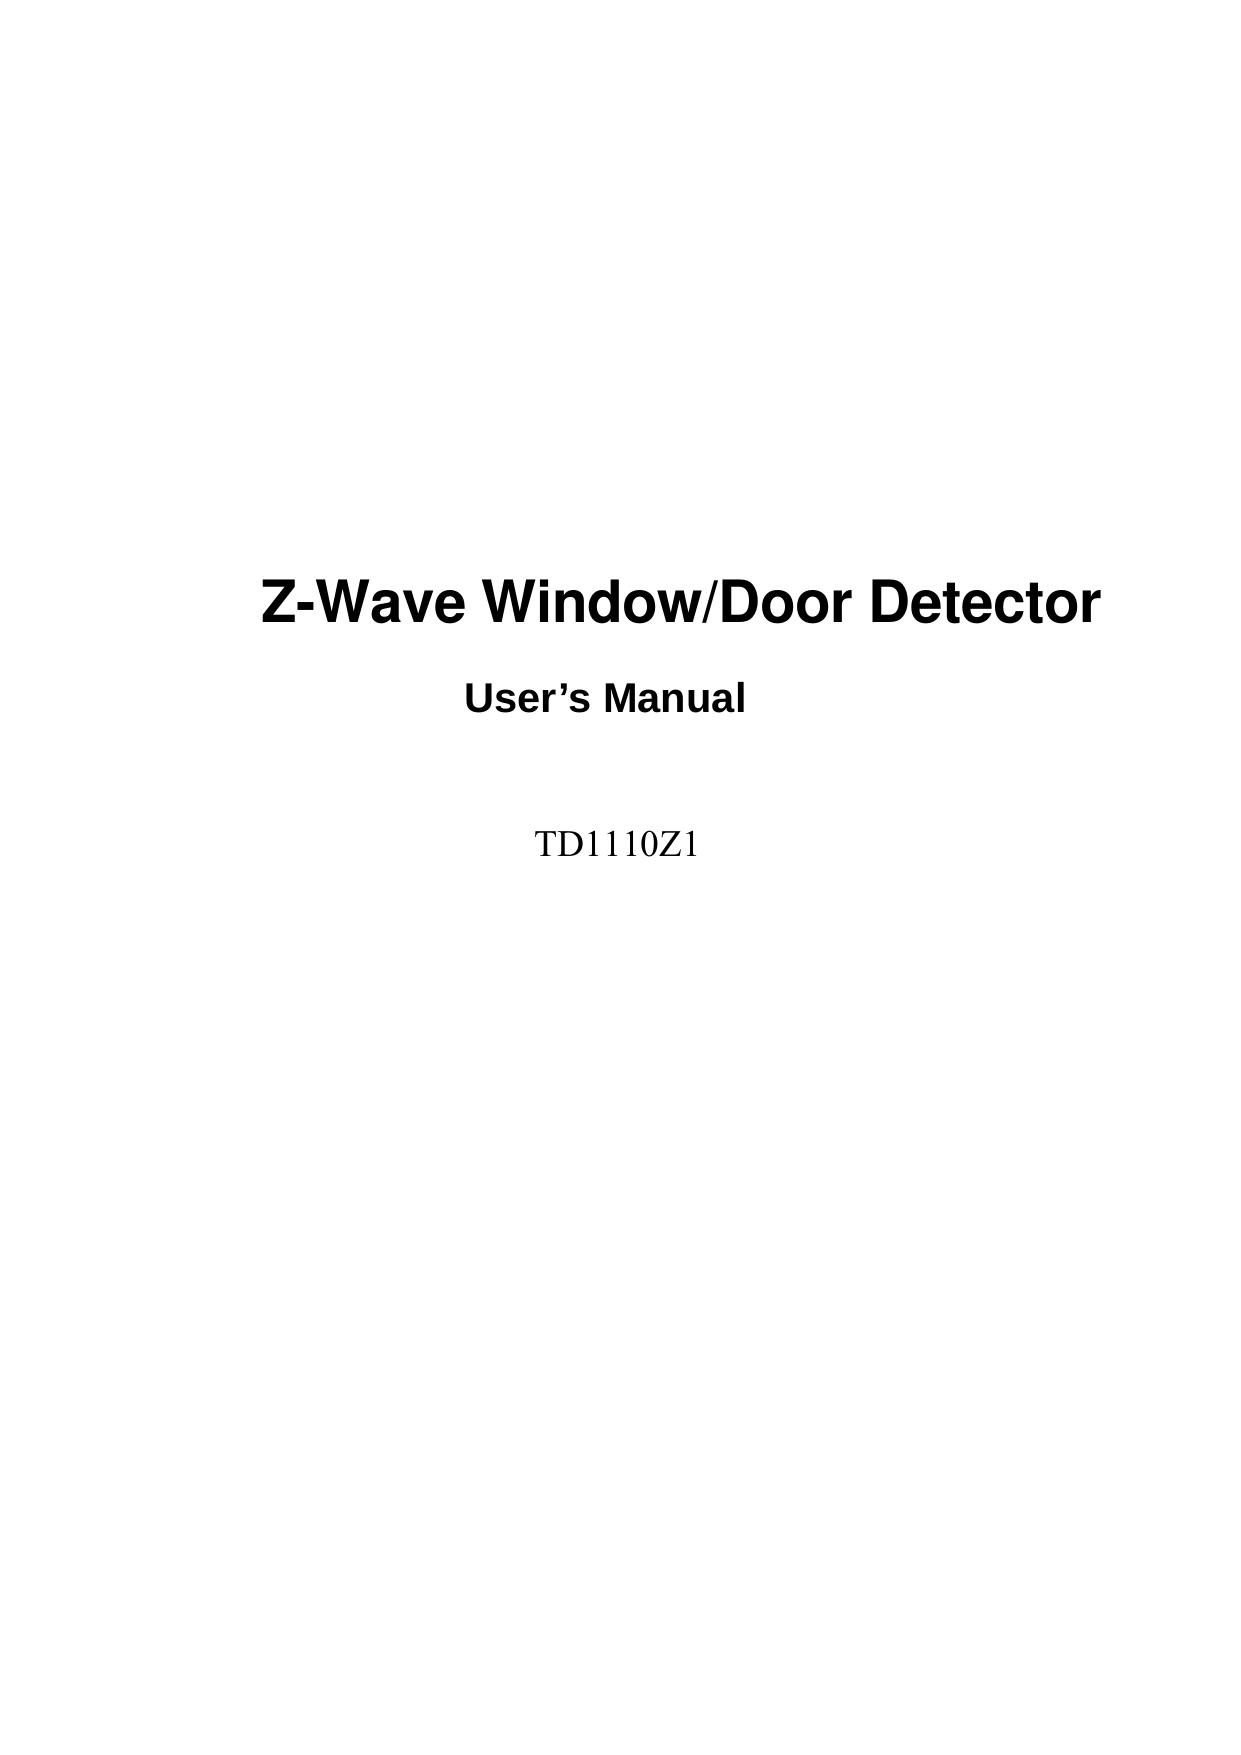              Z-Wave Window/Door Detector User’s Manual    TD1110Z1 